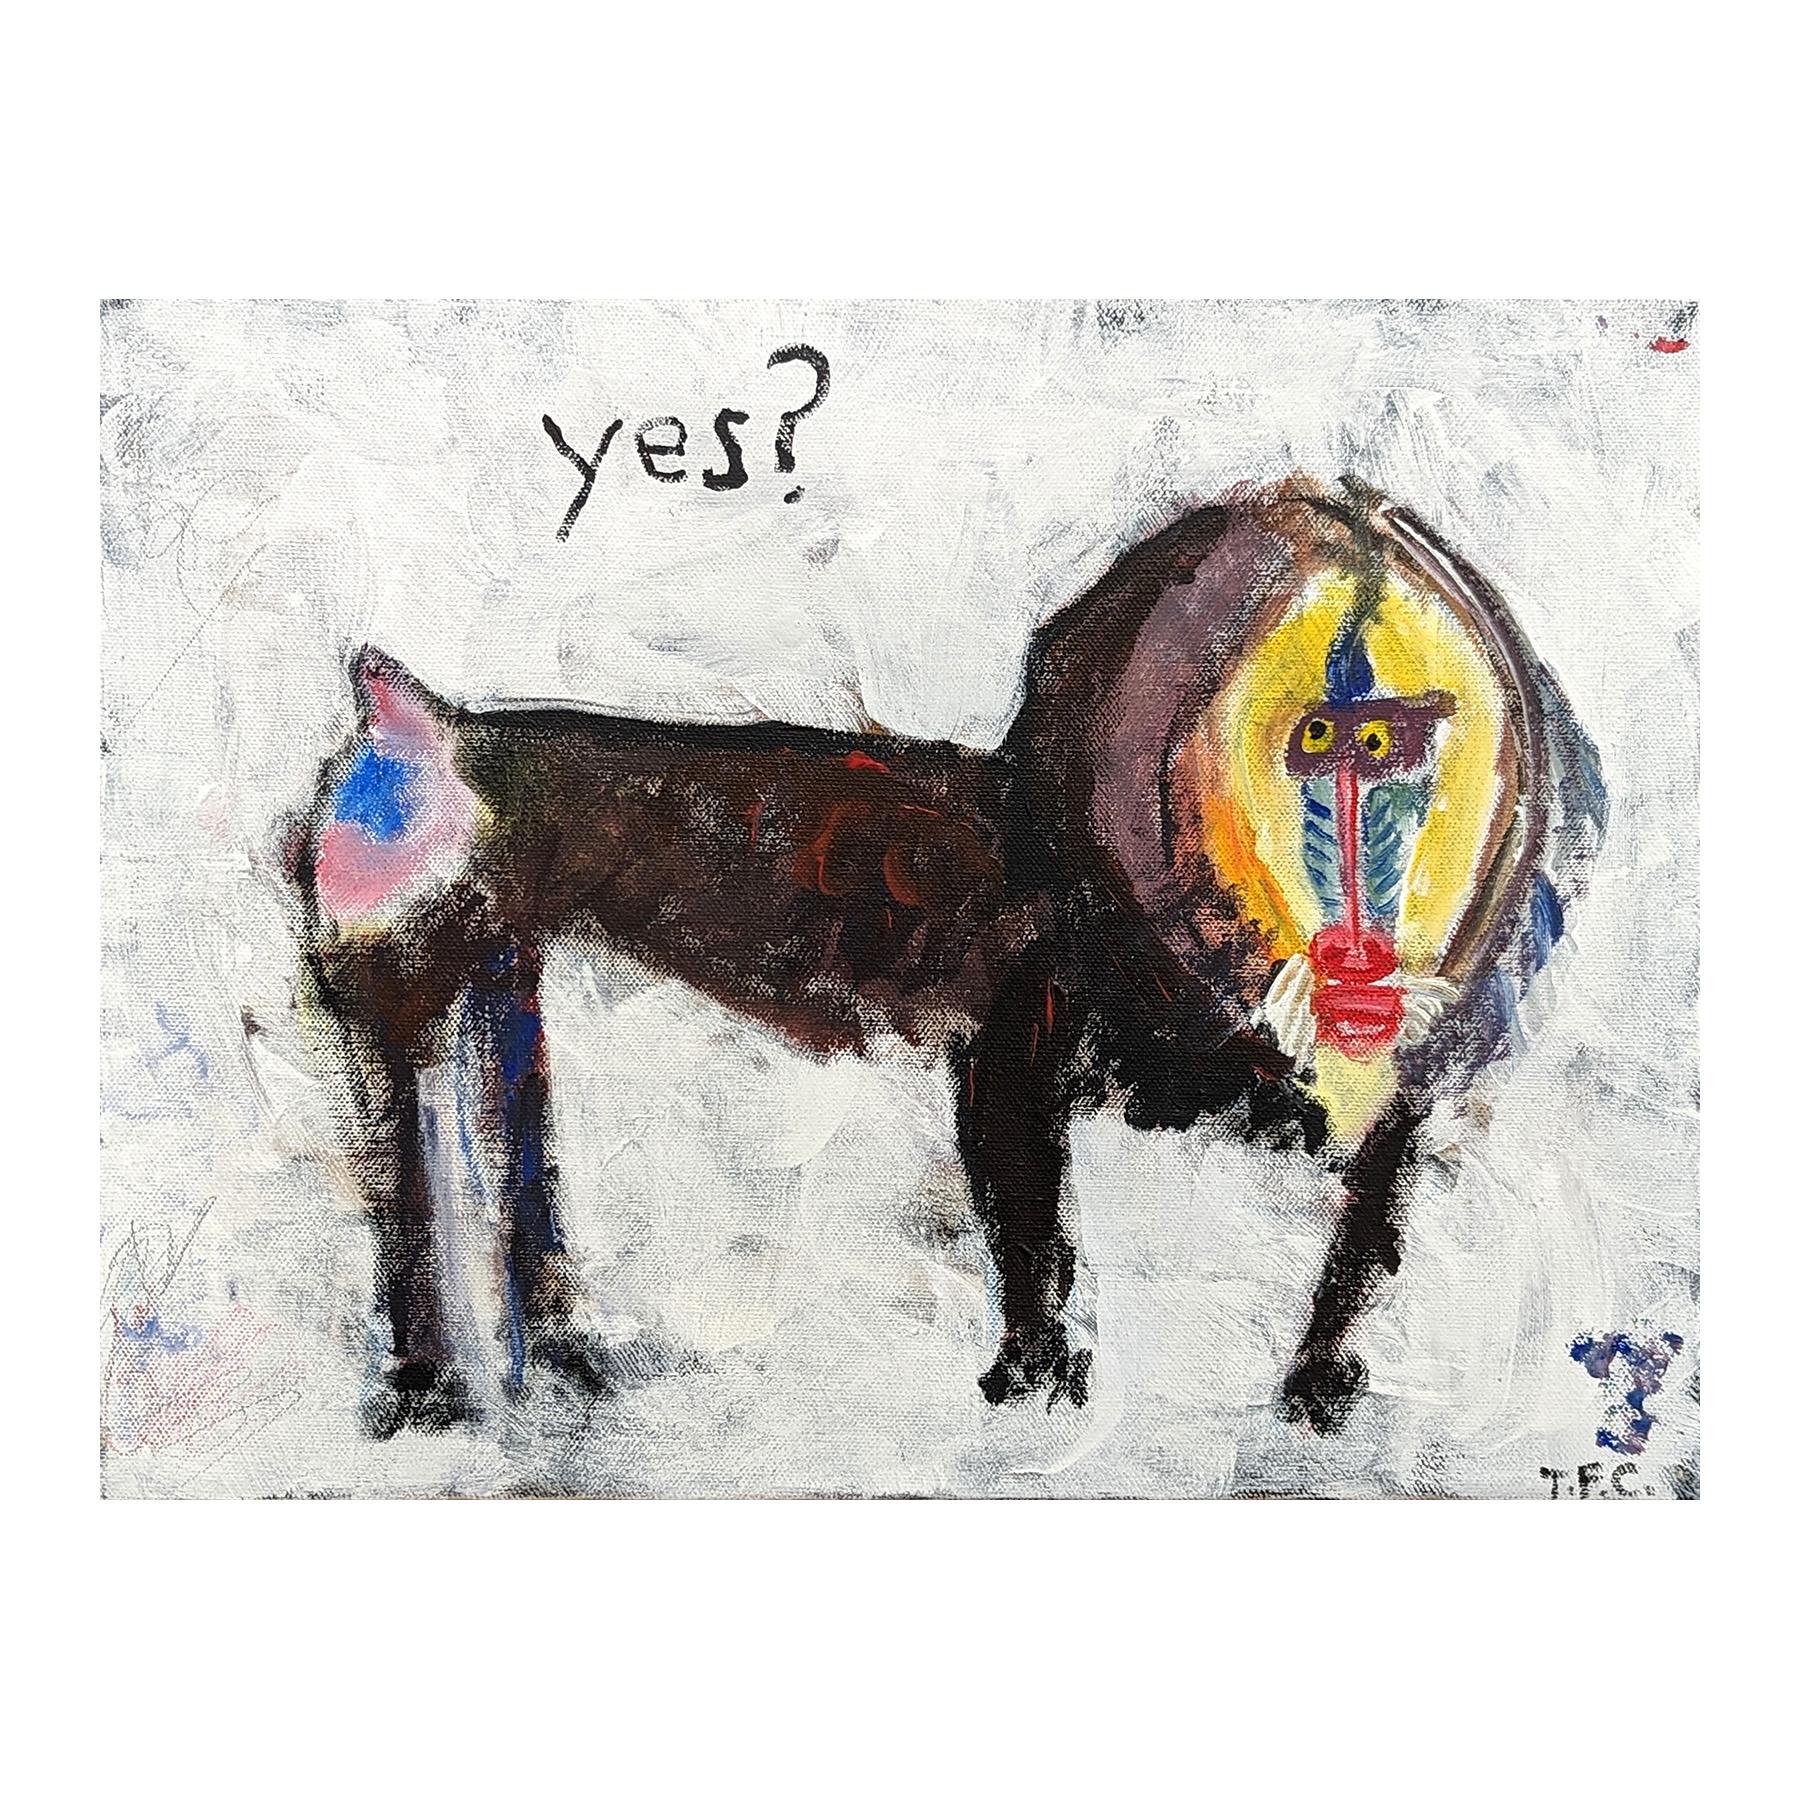 Peinture abstraite animalière de l'artiste contemporain Tyler Casey. L'œuvre présente une représentation gestuelle d'un babouin avec le mot 